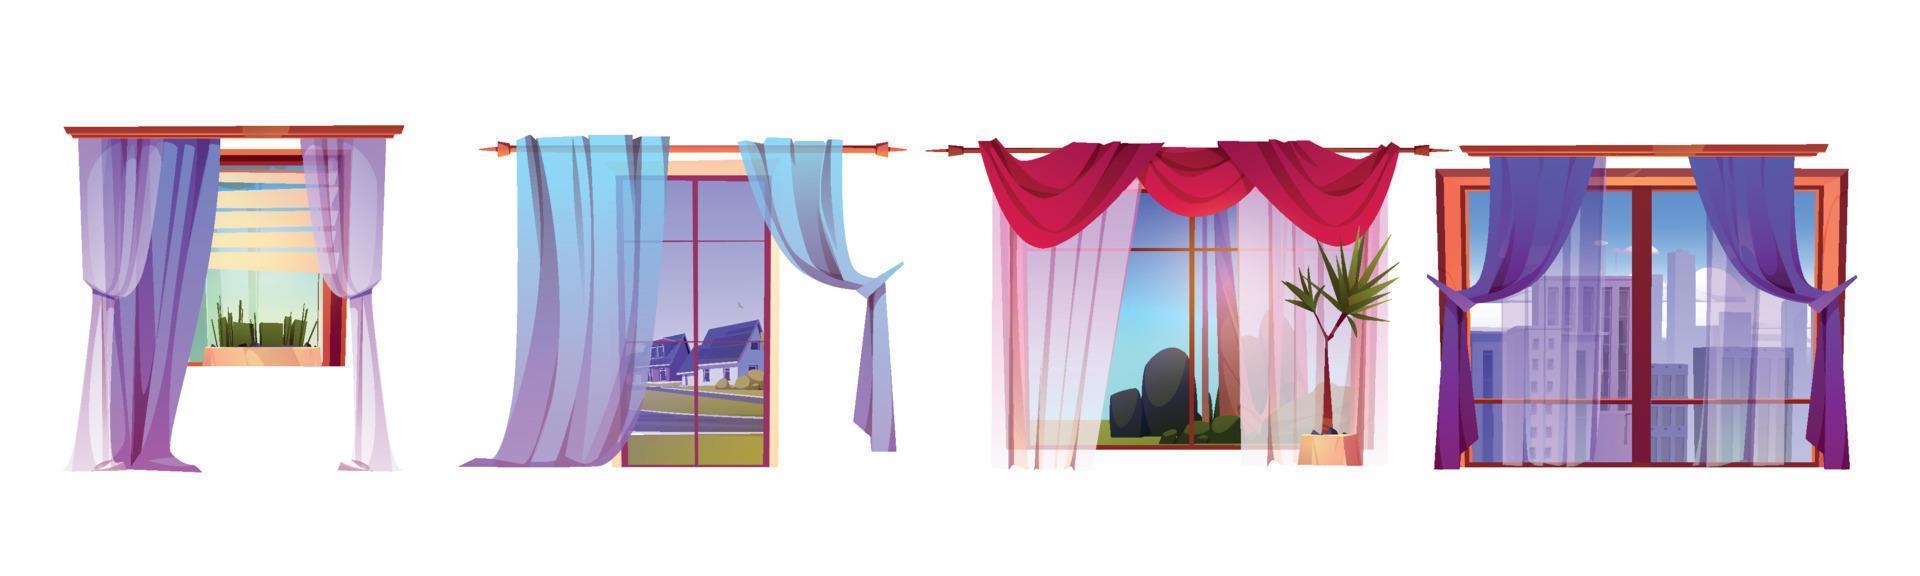 Fenster mit Vorhängen und verschiedenen Ansichten nach draußen vektor